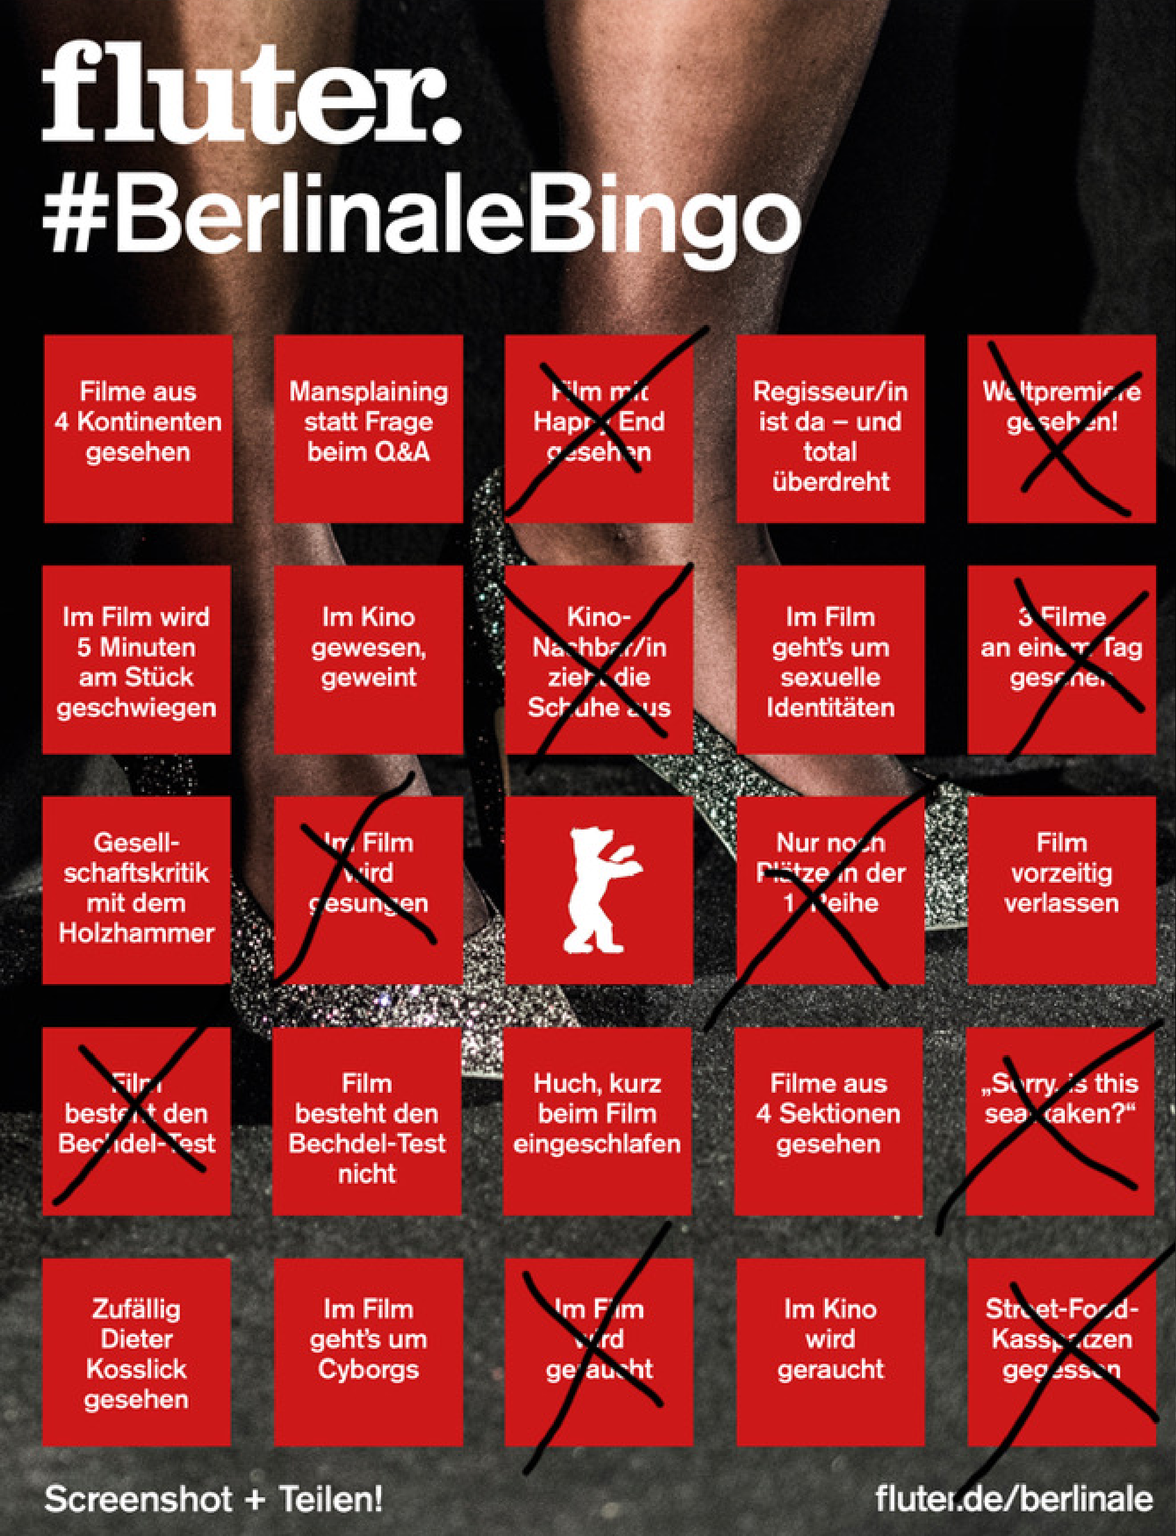 Berlinale-Bingo